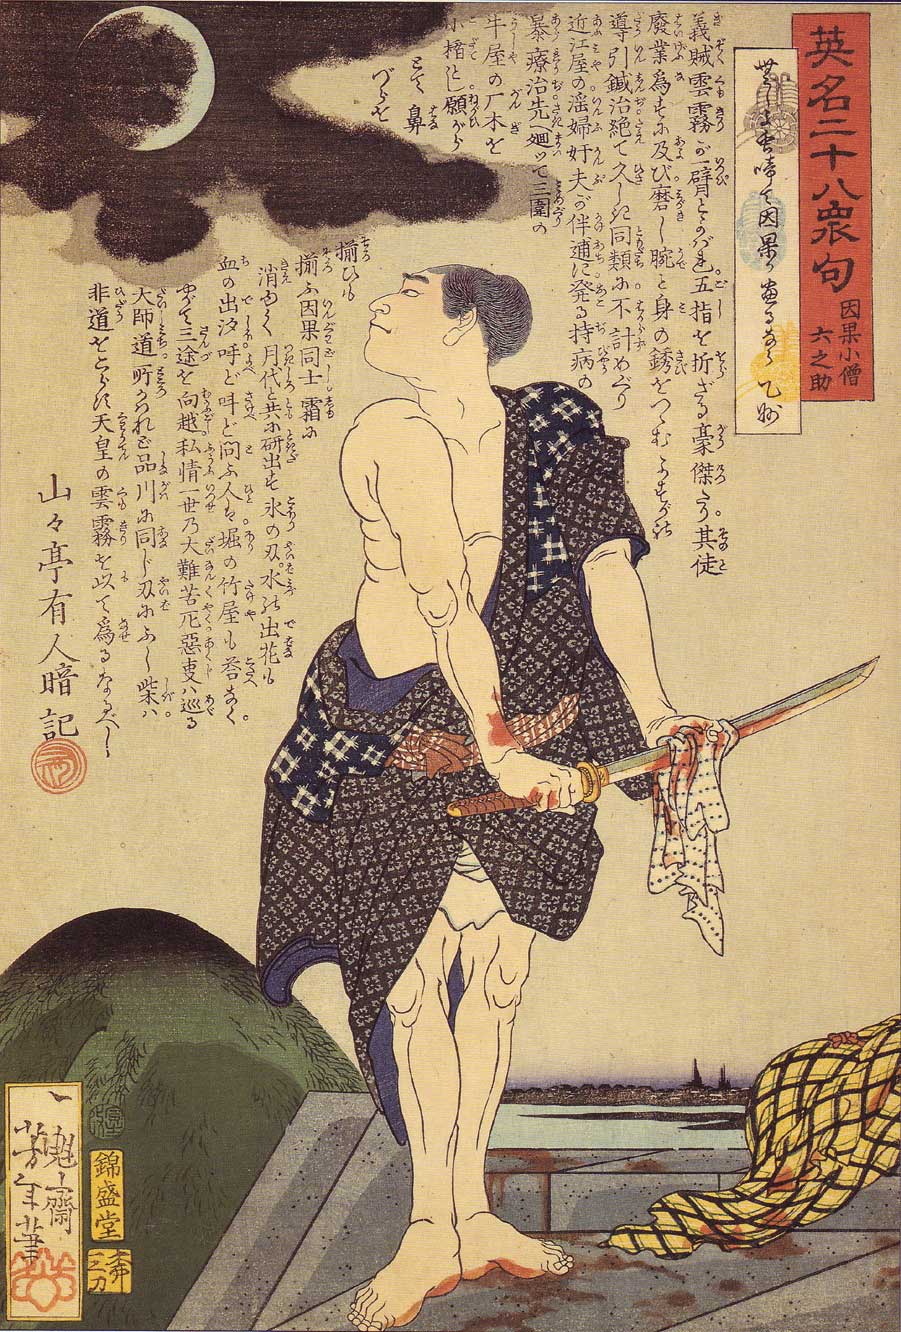 Tsukioka Yoshitoshi, Inga Kozō Rokunosuke wiping his sword, 1866